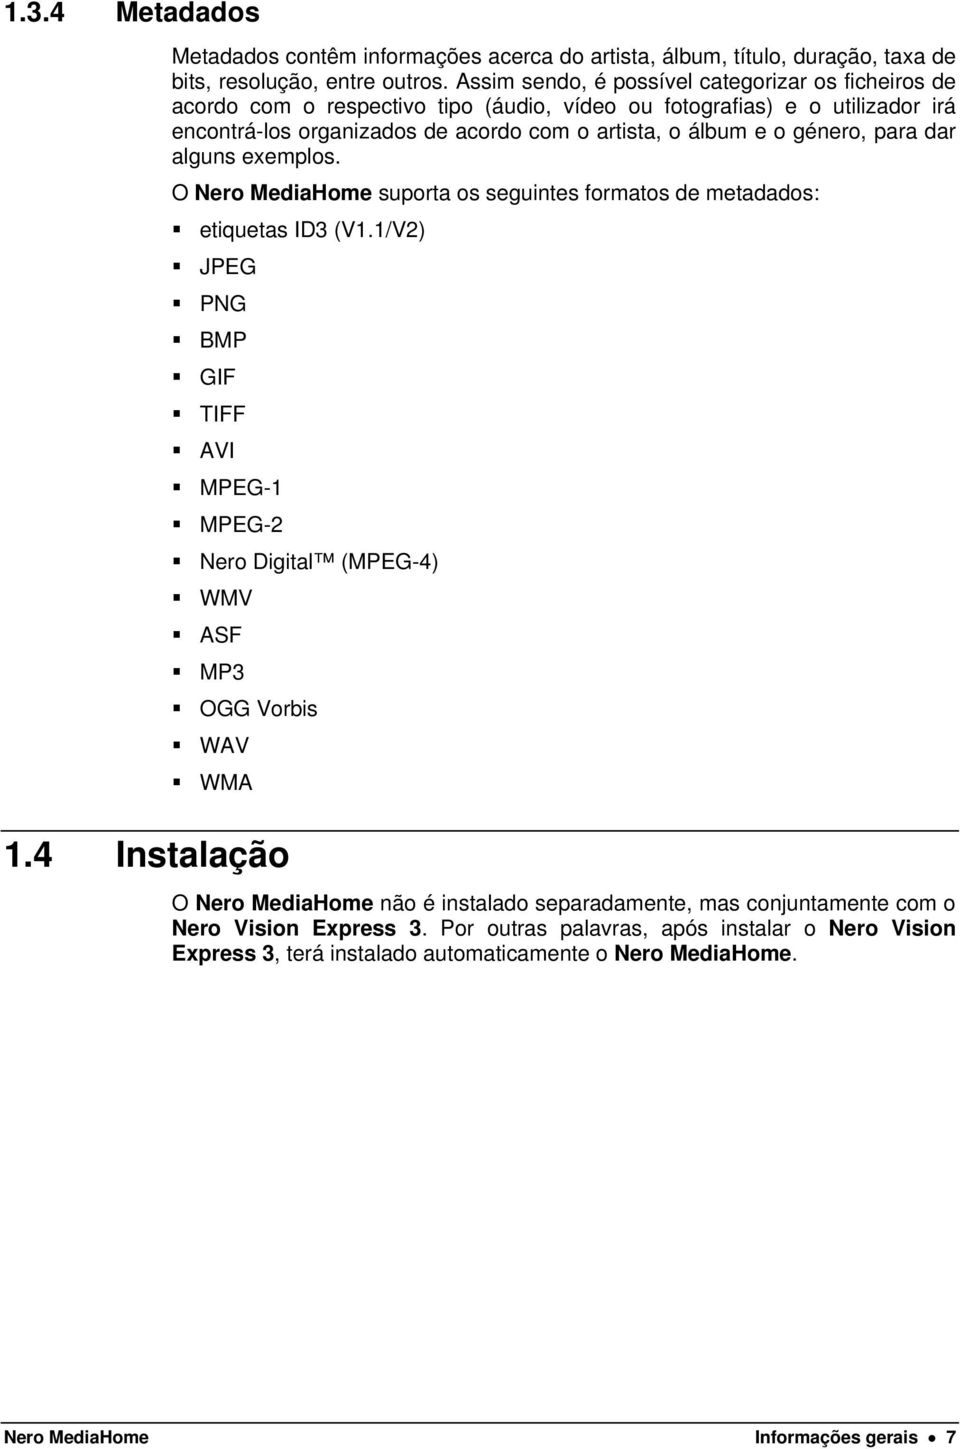 género, para dar alguns exemplos. O Nero MediaHome suporta os seguintes formatos de metadados: etiquetas ID3 (V1.